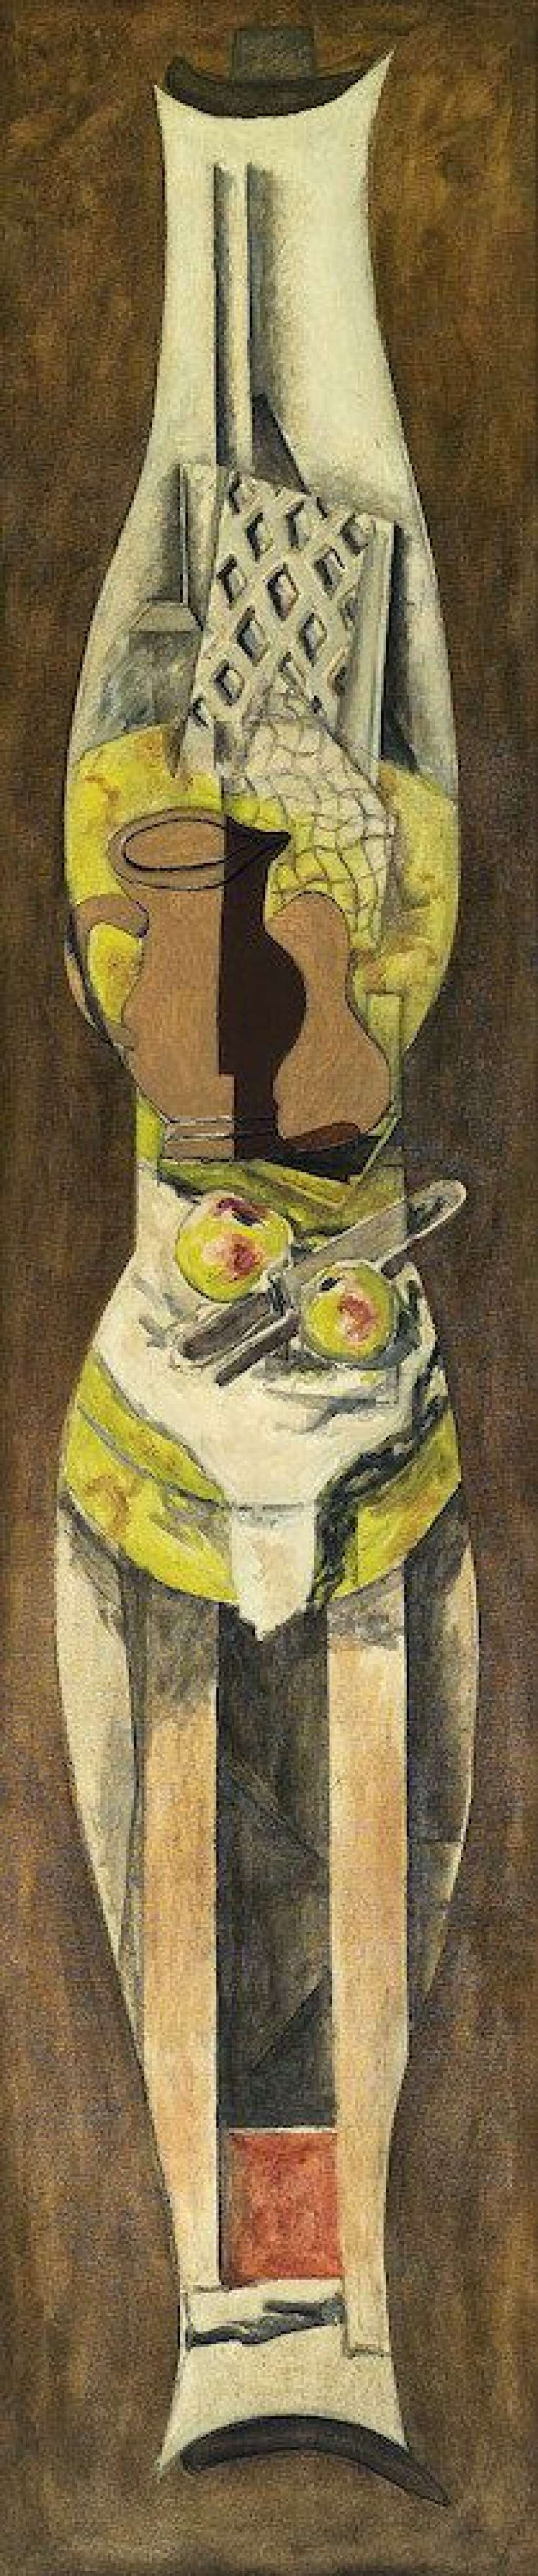 Georges Braque, Nature morte au pichet, 1926-1927 - © Adagp, Paris 2013